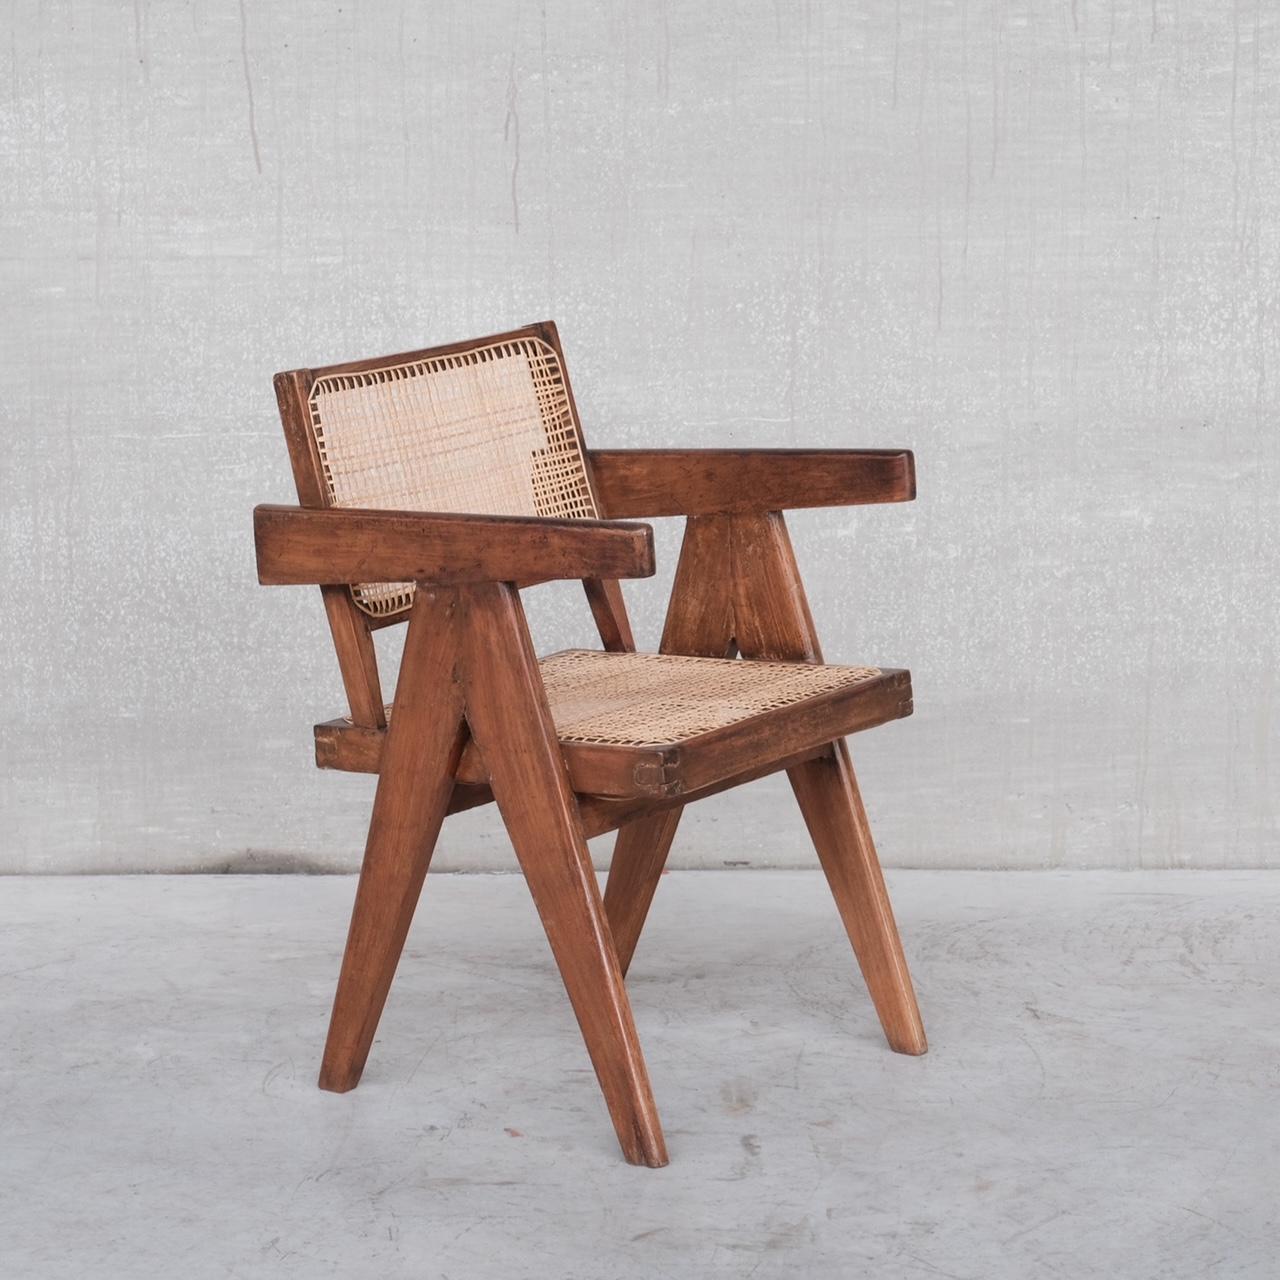 Une authentique chaise de bureau de Pierre Jeanneret. 

Teck et canne. 

Inde, Chandigarh, c1960s. 

Un élément flexible de l'histoire du design qui peut être utilisé dans les chambres à coucher, les salons, etc. - où qu'il se trouve, il